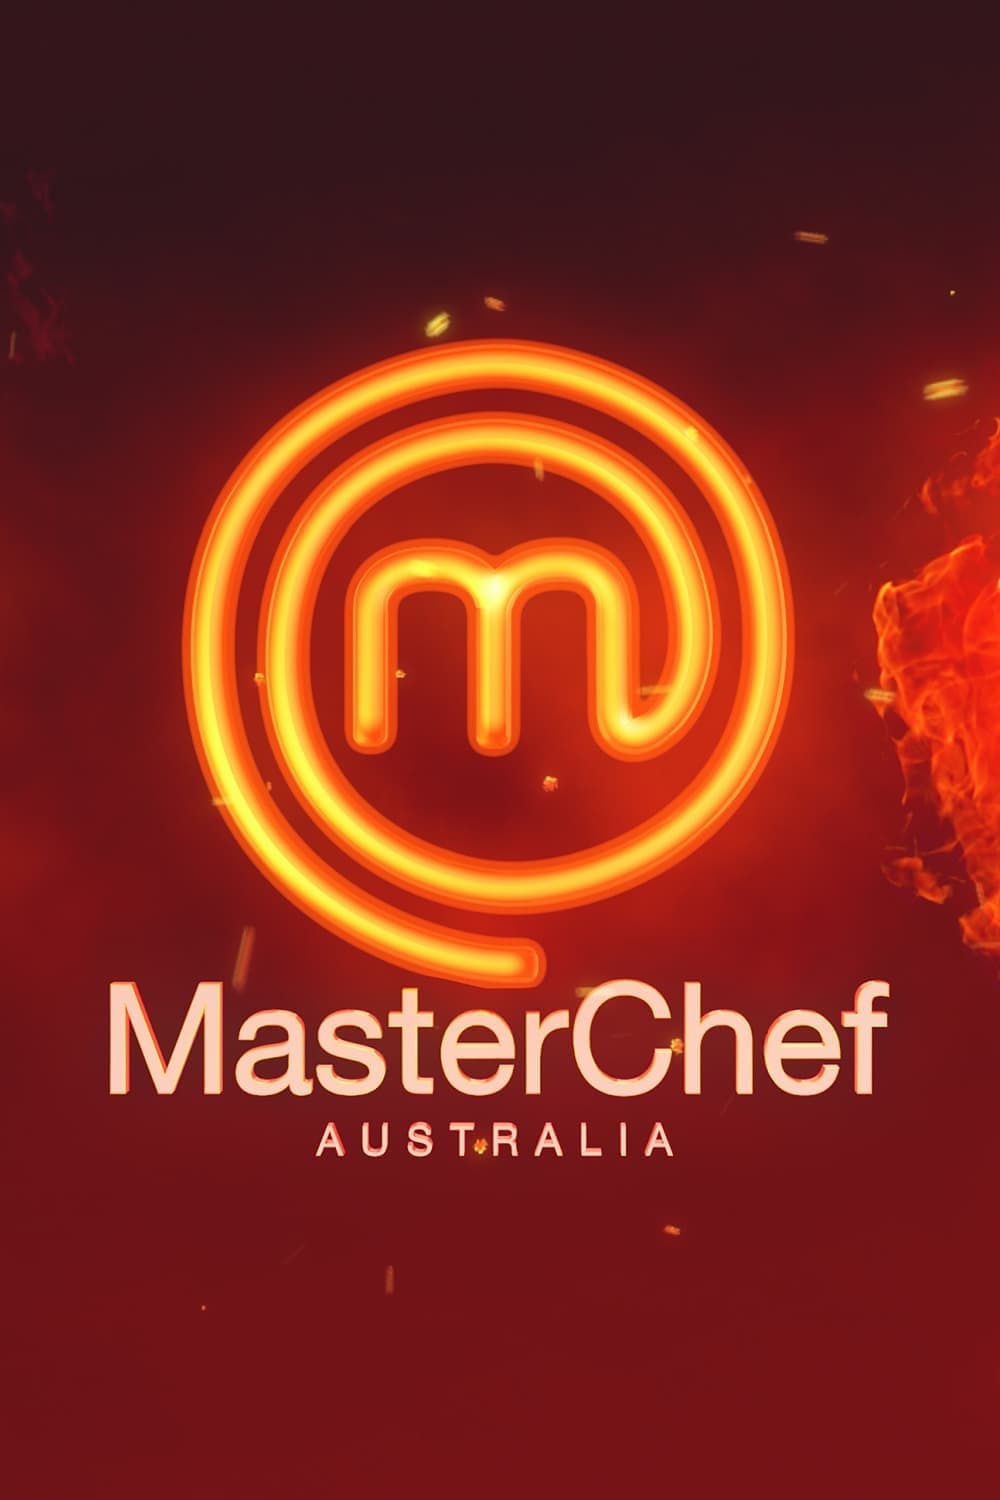 Caratula de MasterChef Australia (Masterchef Australia) 